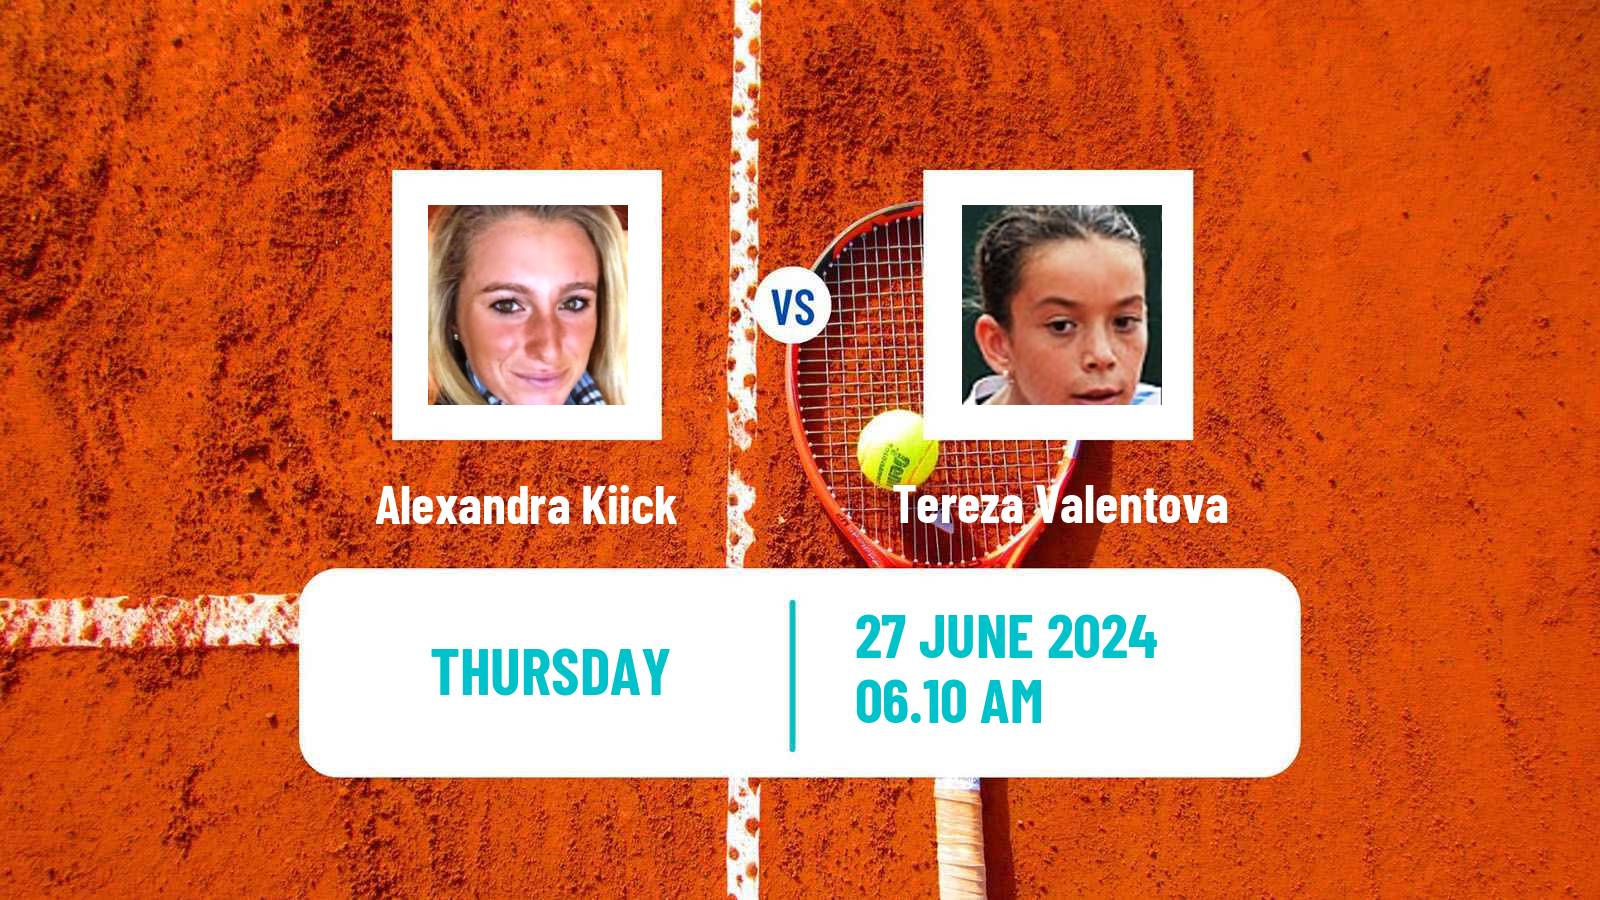 Tennis ITF W75 Doksy Stare Splavy Women Alexandra Kiick - Tereza Valentova